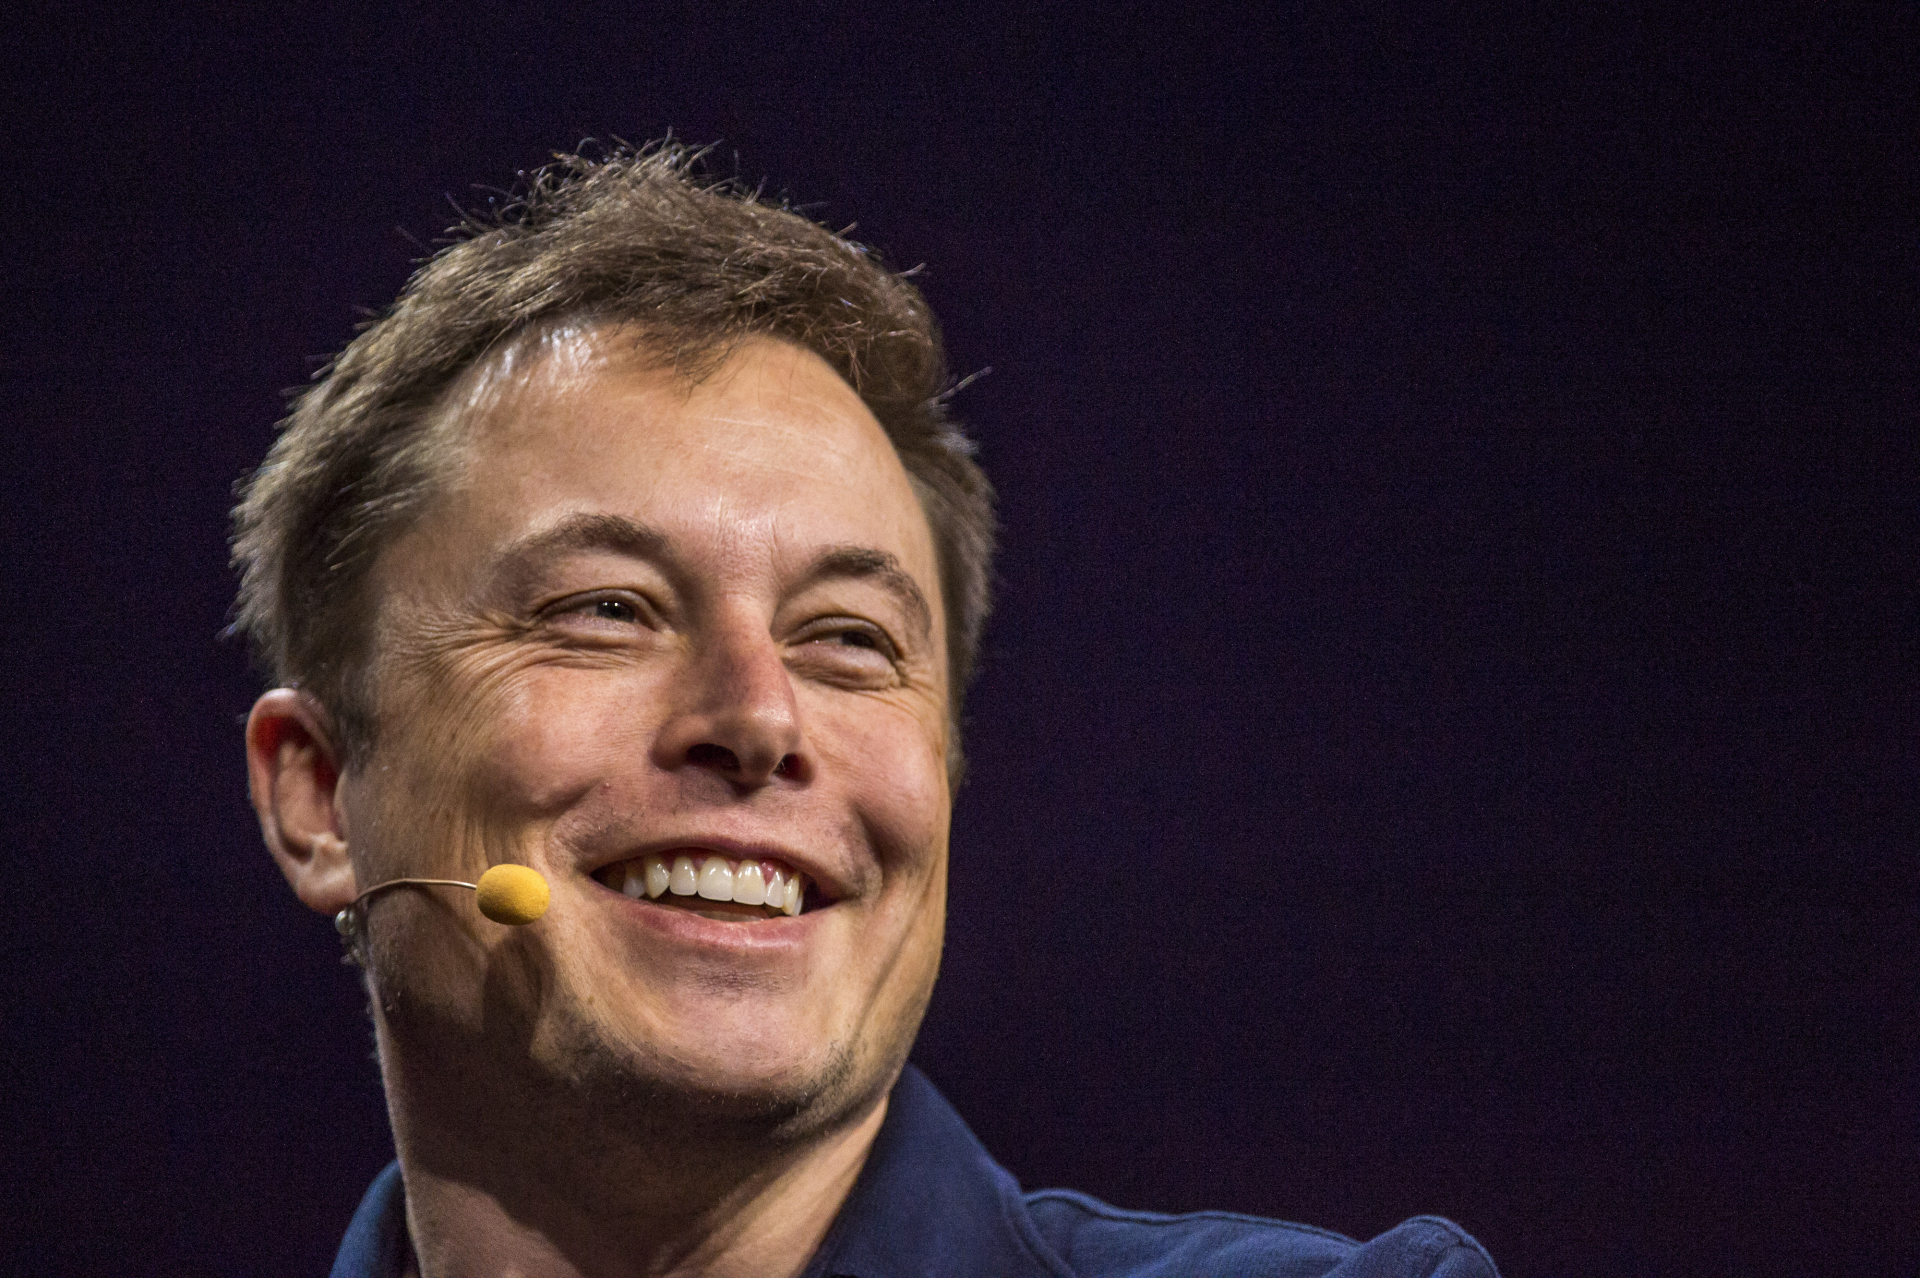 Gelecek nesile yön veren adamlar -1: Elon Musk